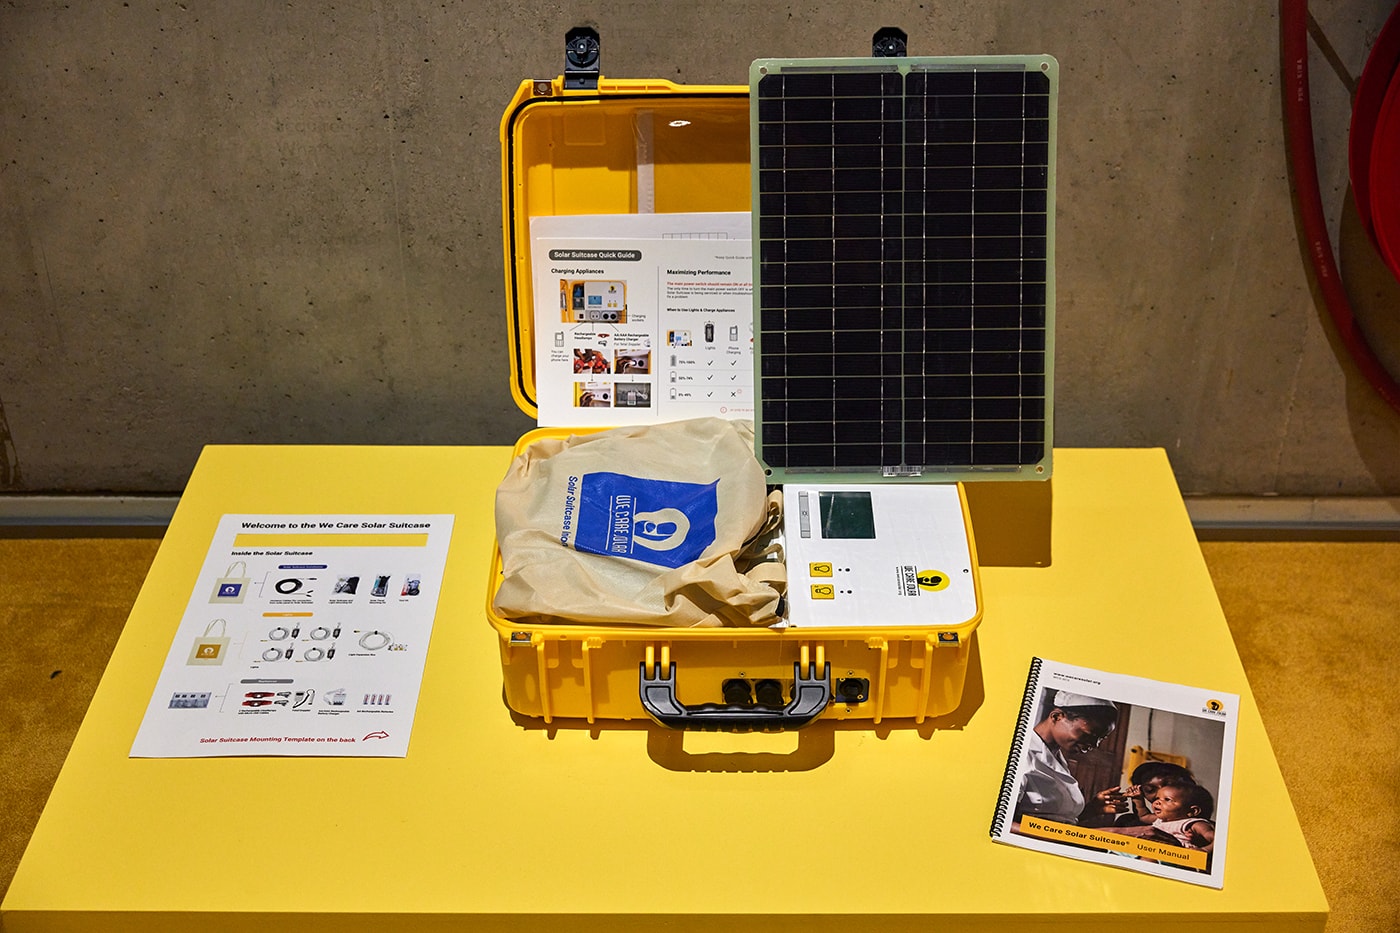 太陽光発電の未来や世界のエネルギー事情に焦点を当てた展覧会 “The Energy Show” が開催中 How Do We Design For A Solar-Powered Future?